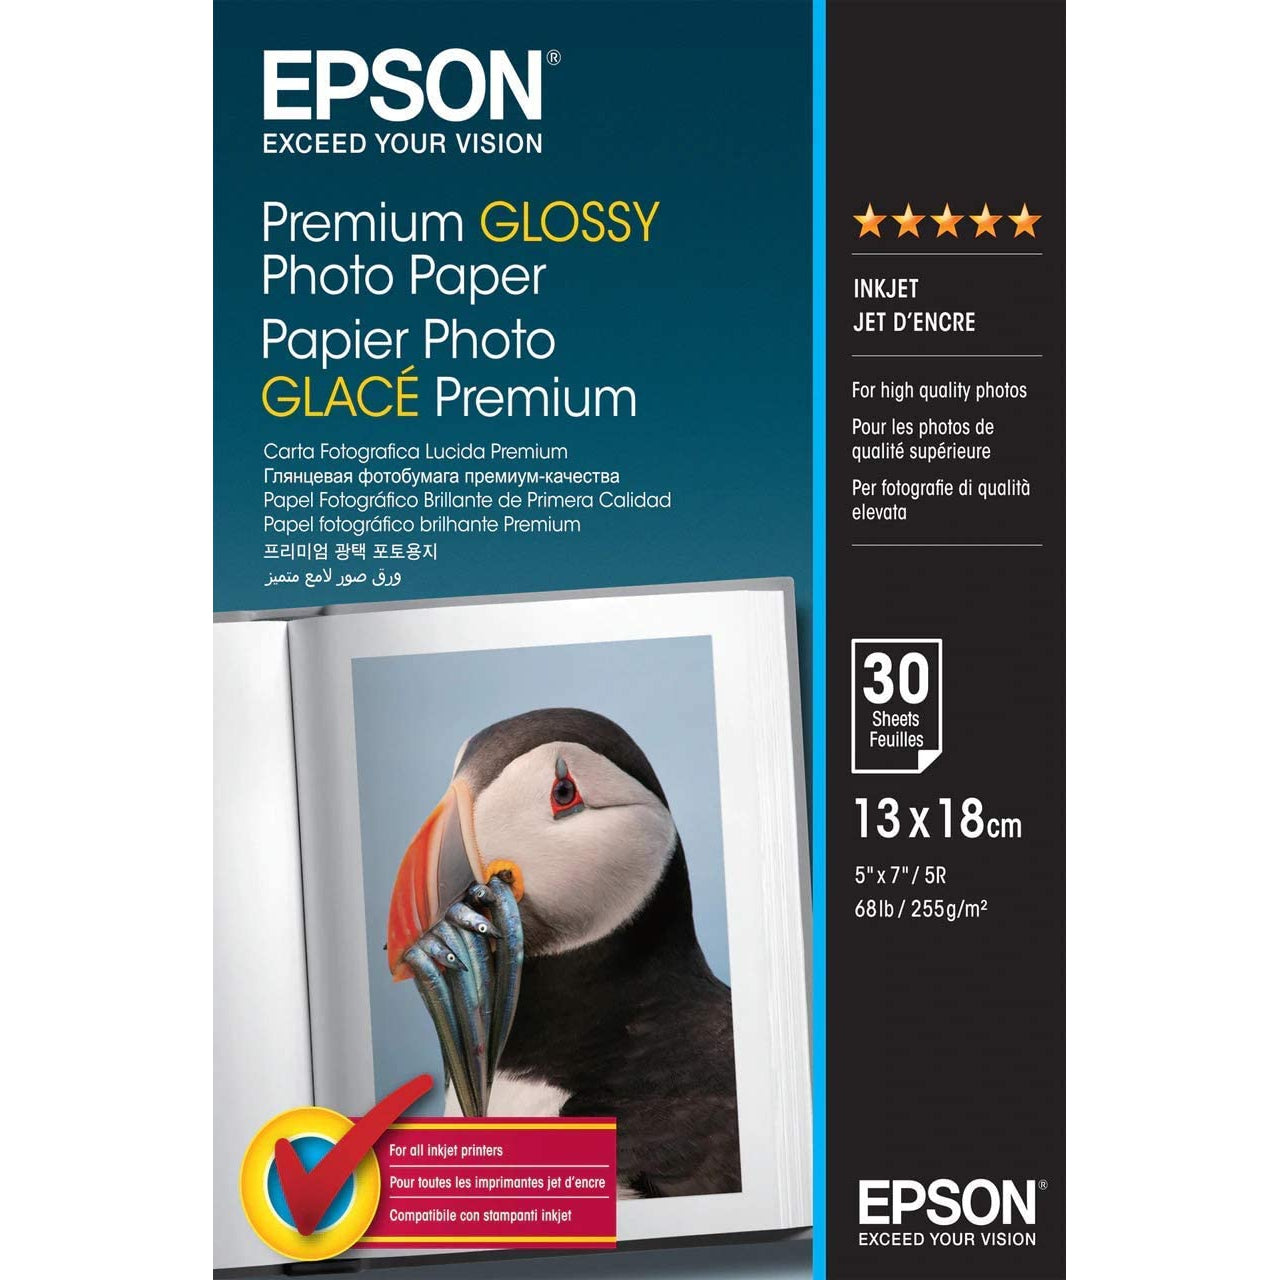 Epson Premium Glossy Photo Paper, 30 Sheets, 13x18cm - White